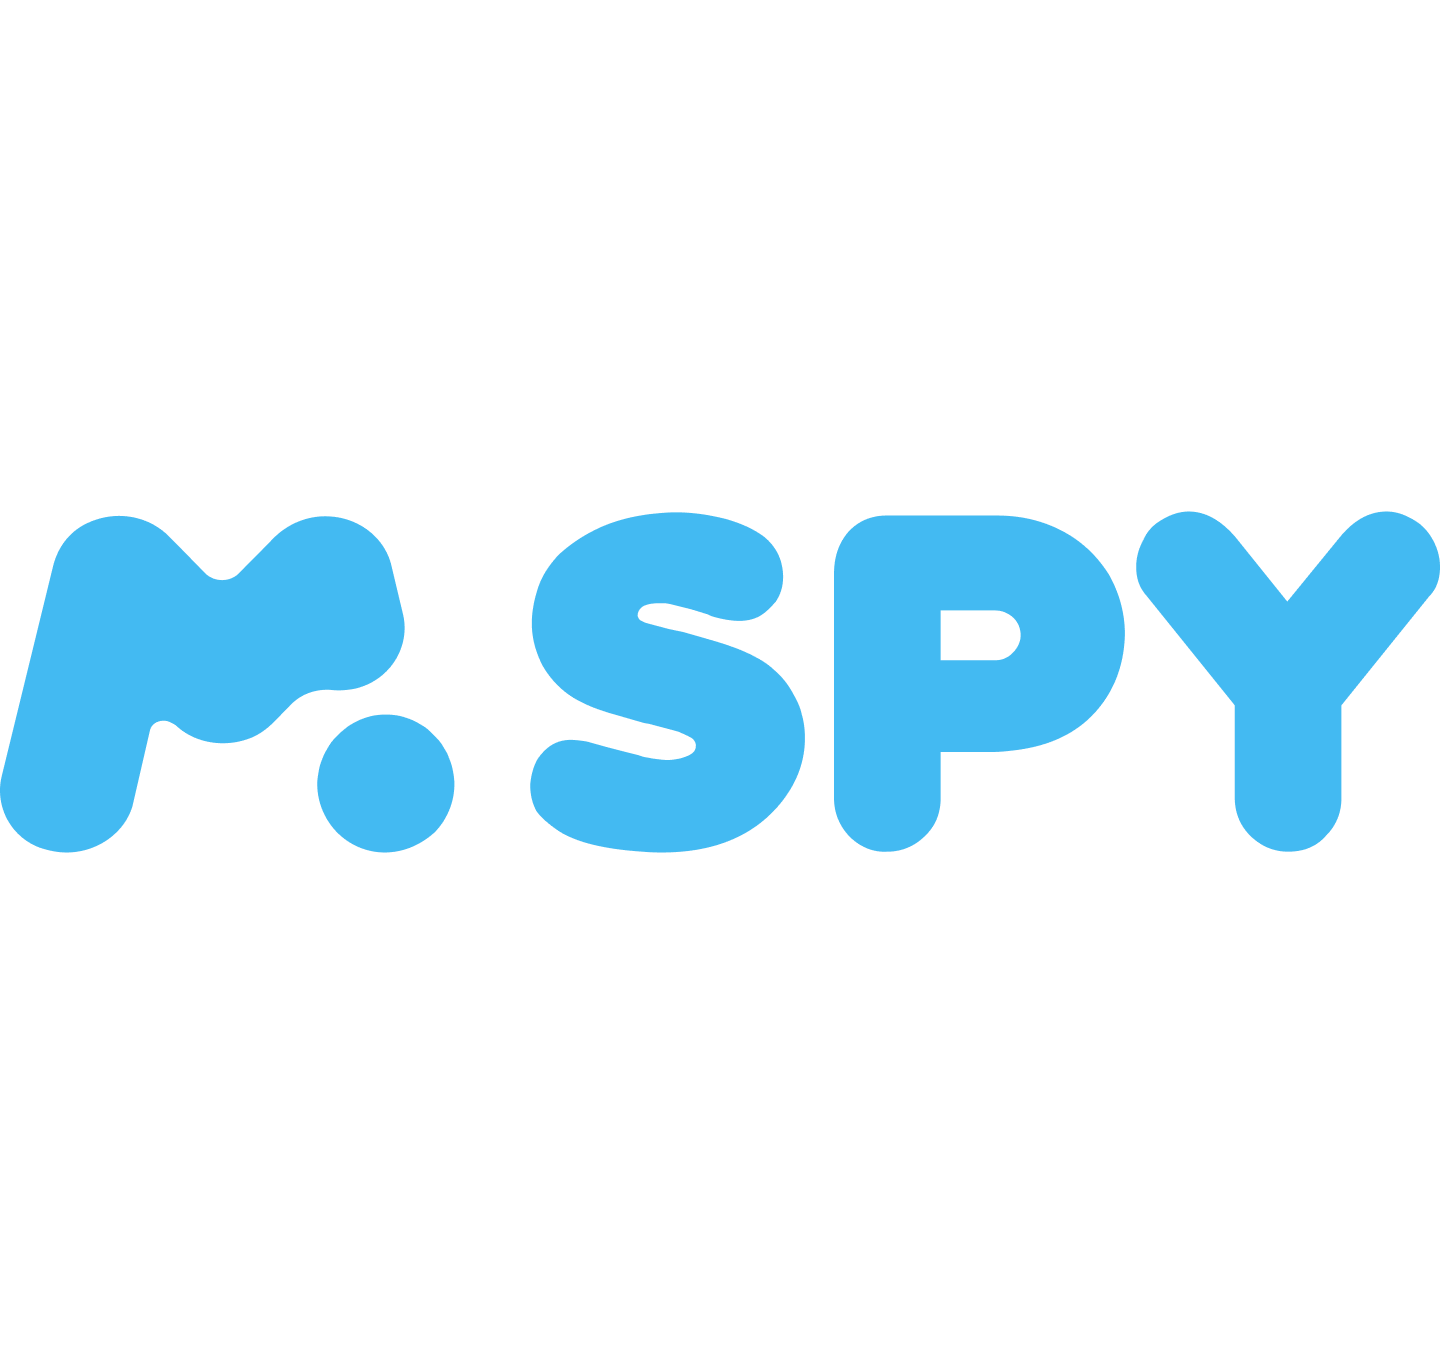 File:Mspy logo new2.png - Wikipedia